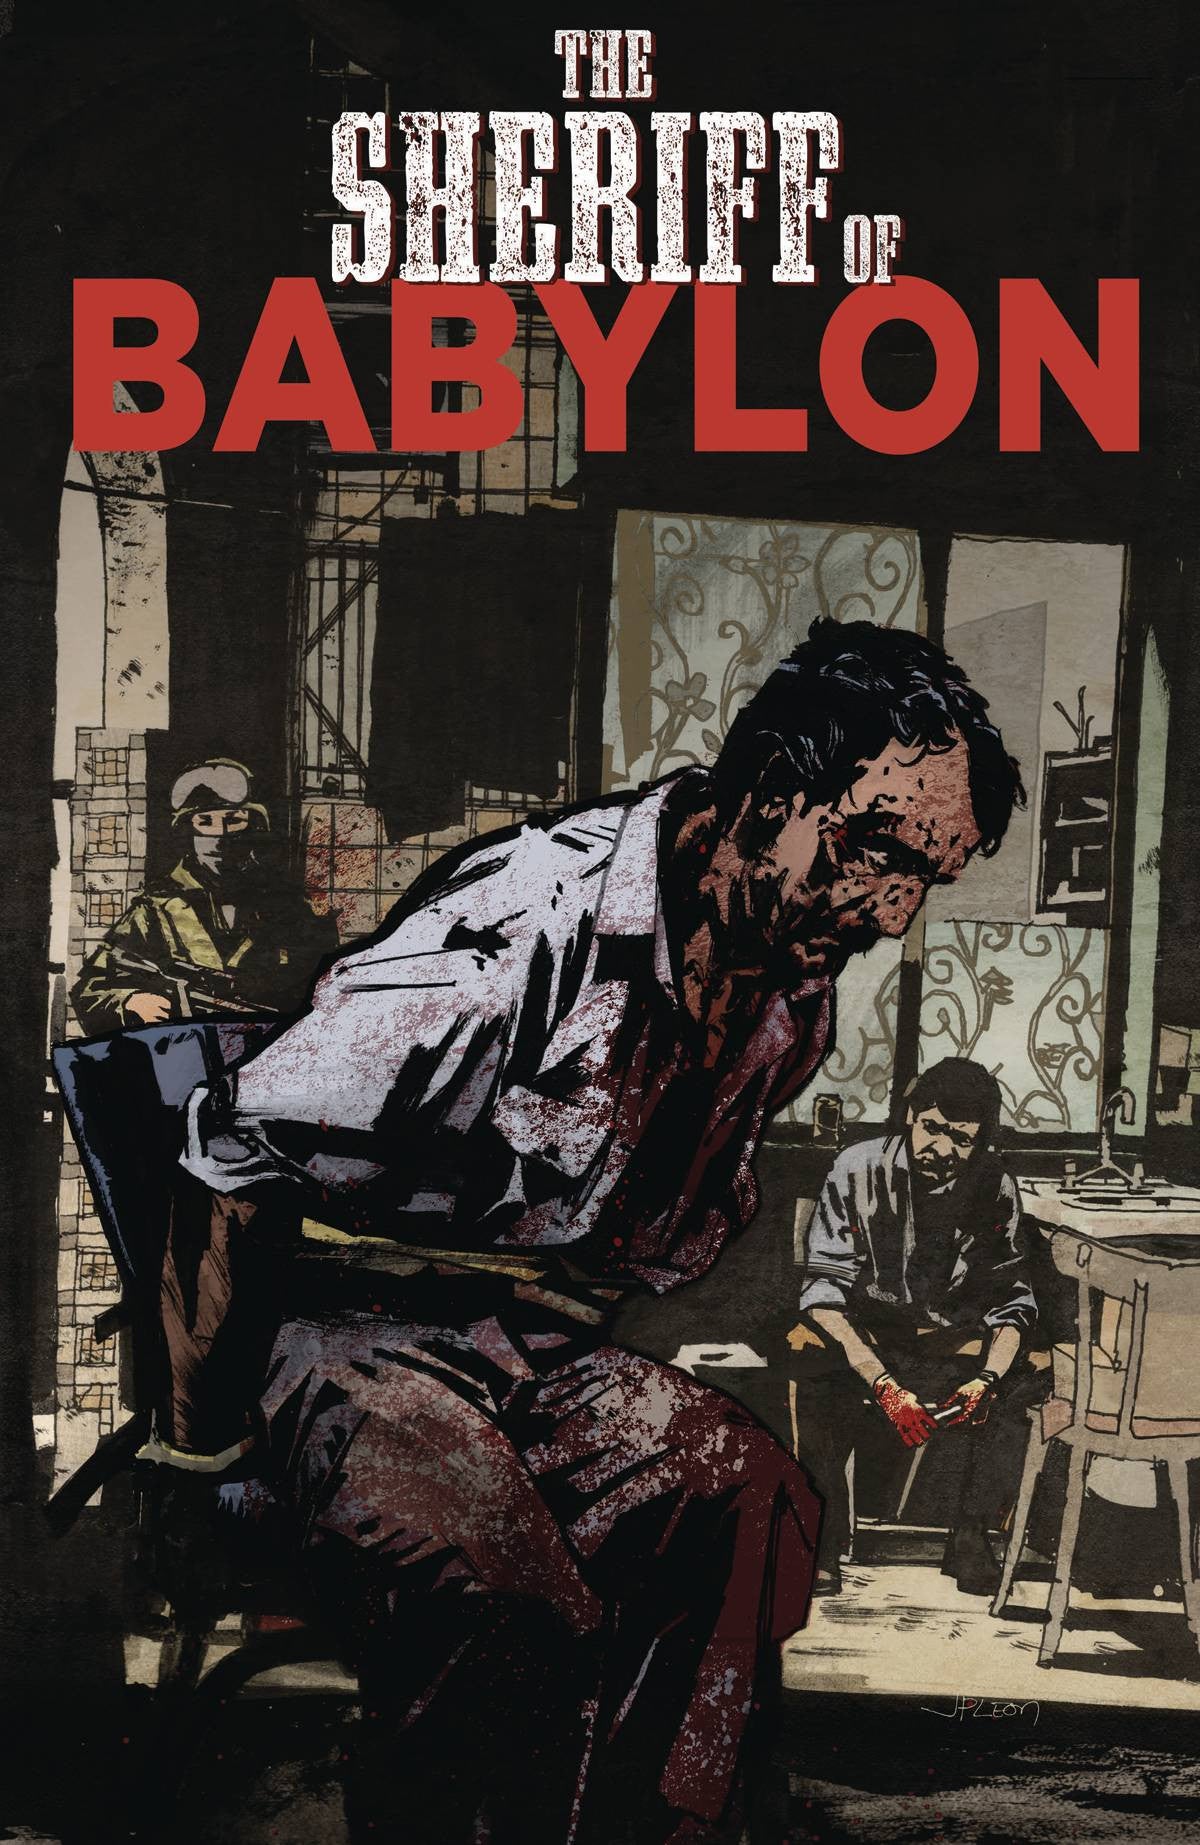 SHERIFF OF BABYLON #7 (OF 12)(MR) COVER